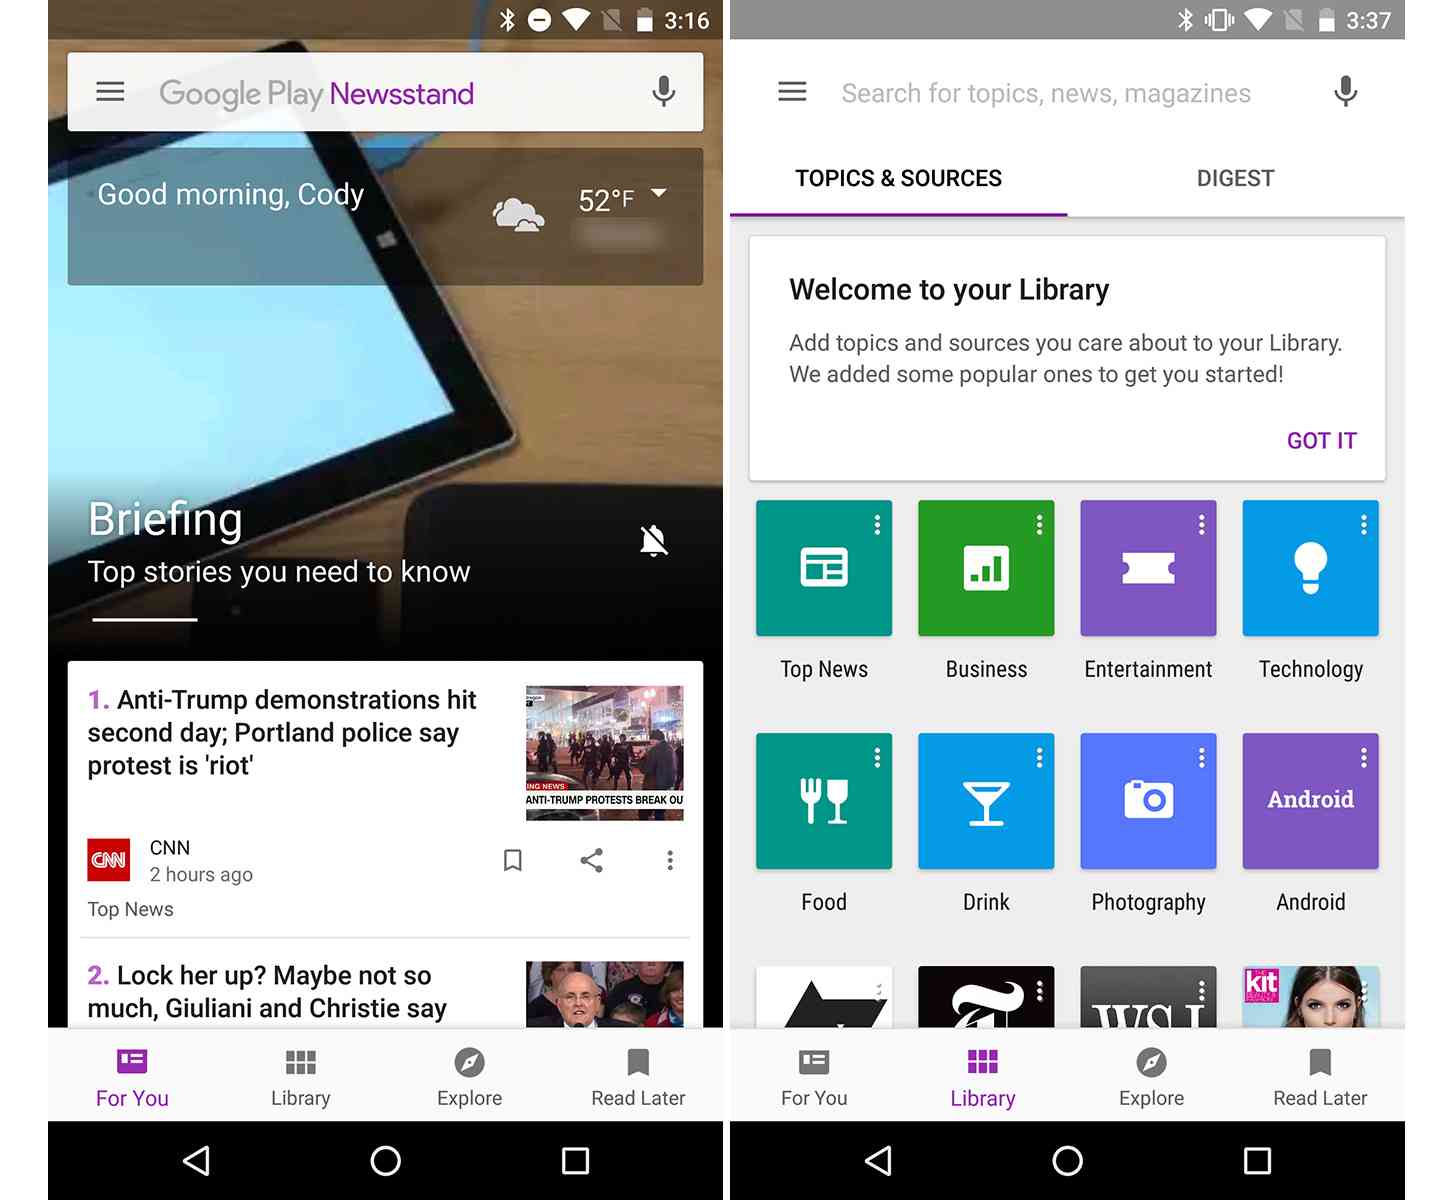 Google Play Newsstand 4.0 update screenshots